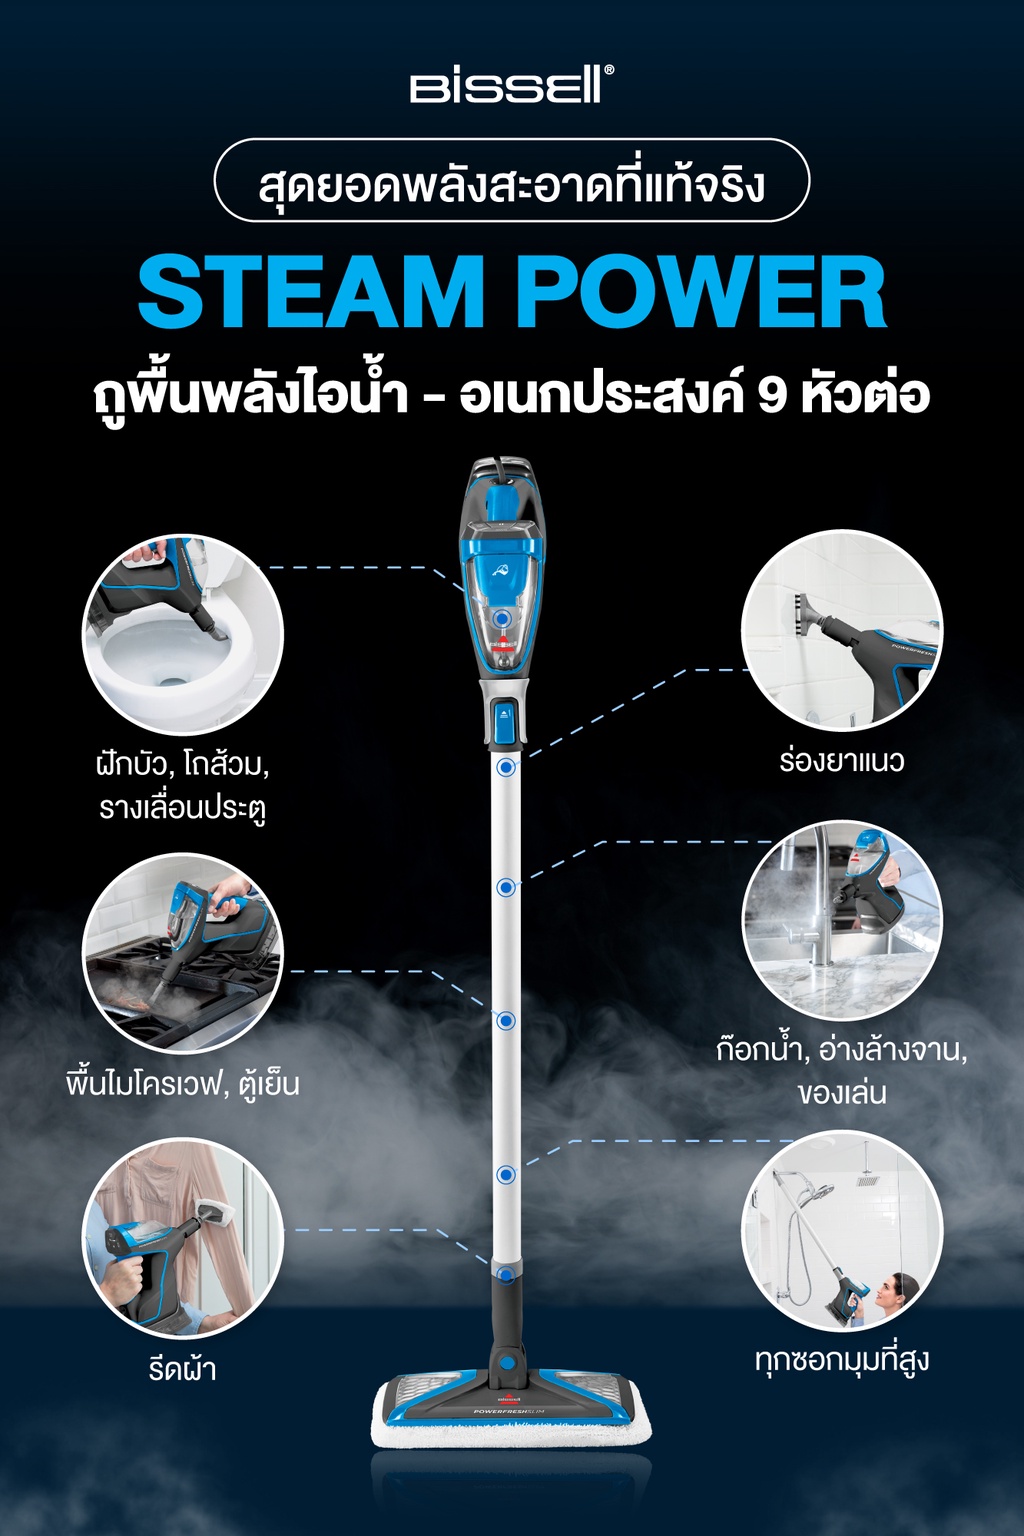 เกี่ยวกับ BISSELL รุ่น PowerFresh Slim Steam เครื่องถูพื้นอเนกประสงค์-ระบบไอน้ำฆ่าเชื้อโรค